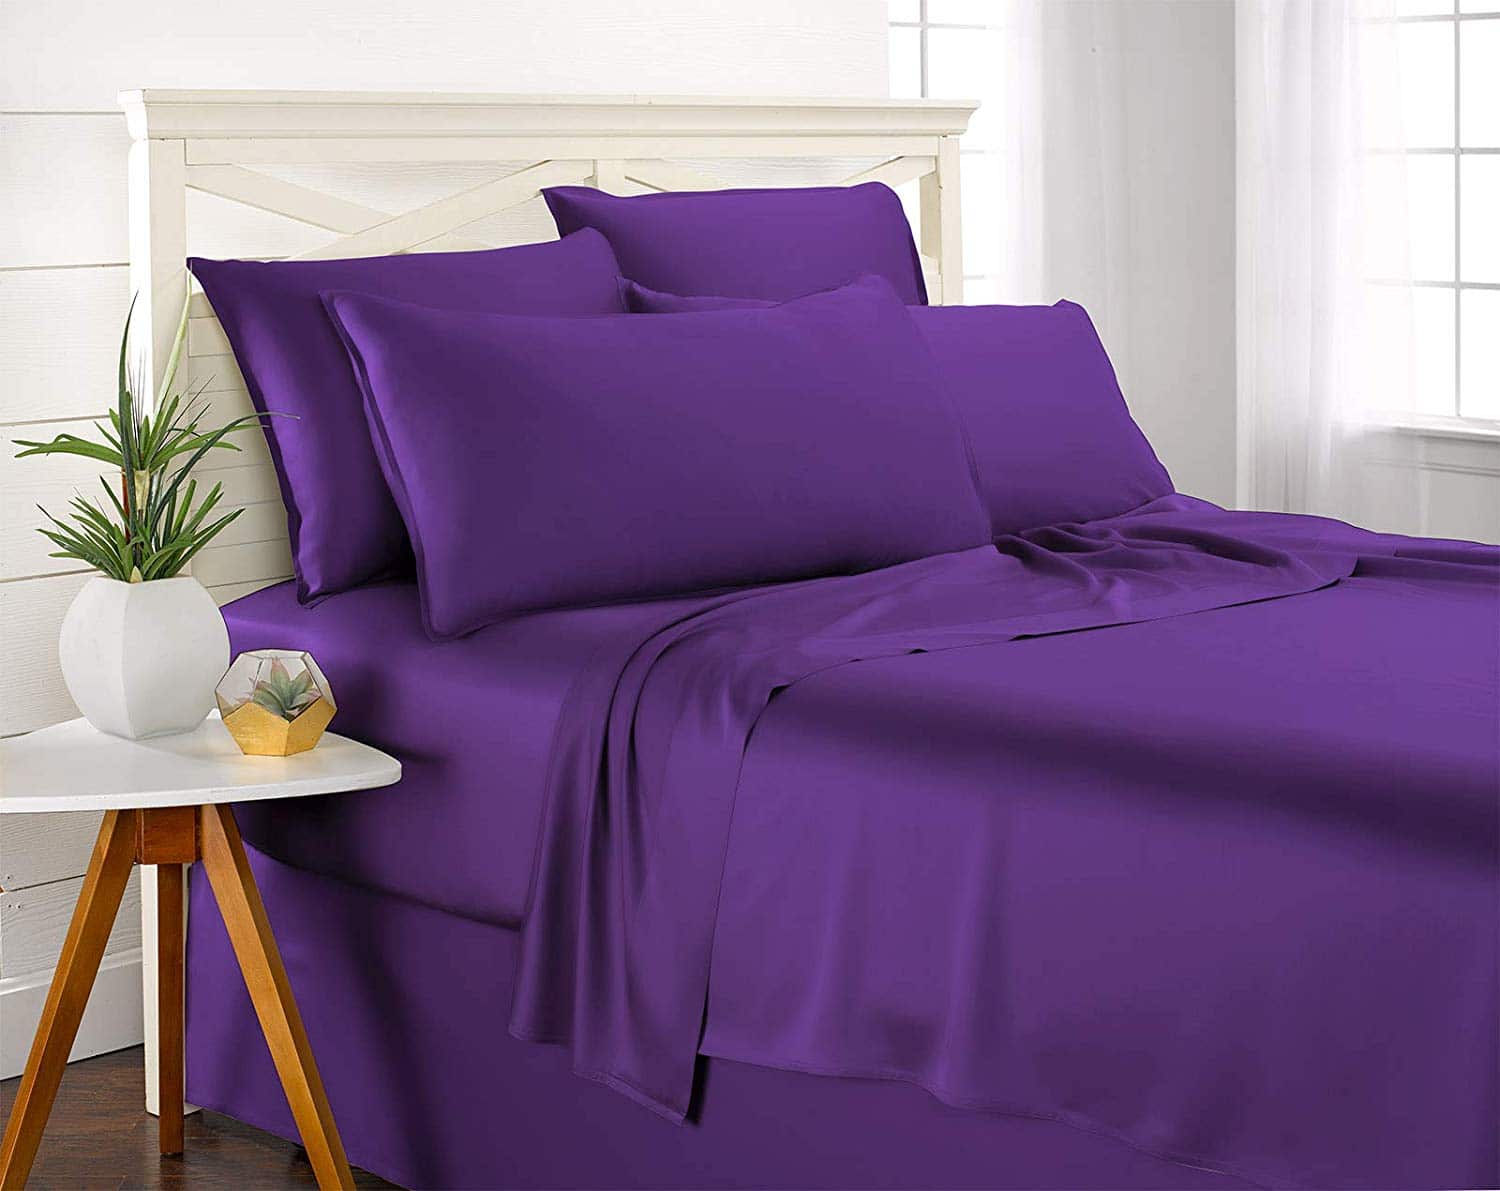 purple mattress bamboo sheets